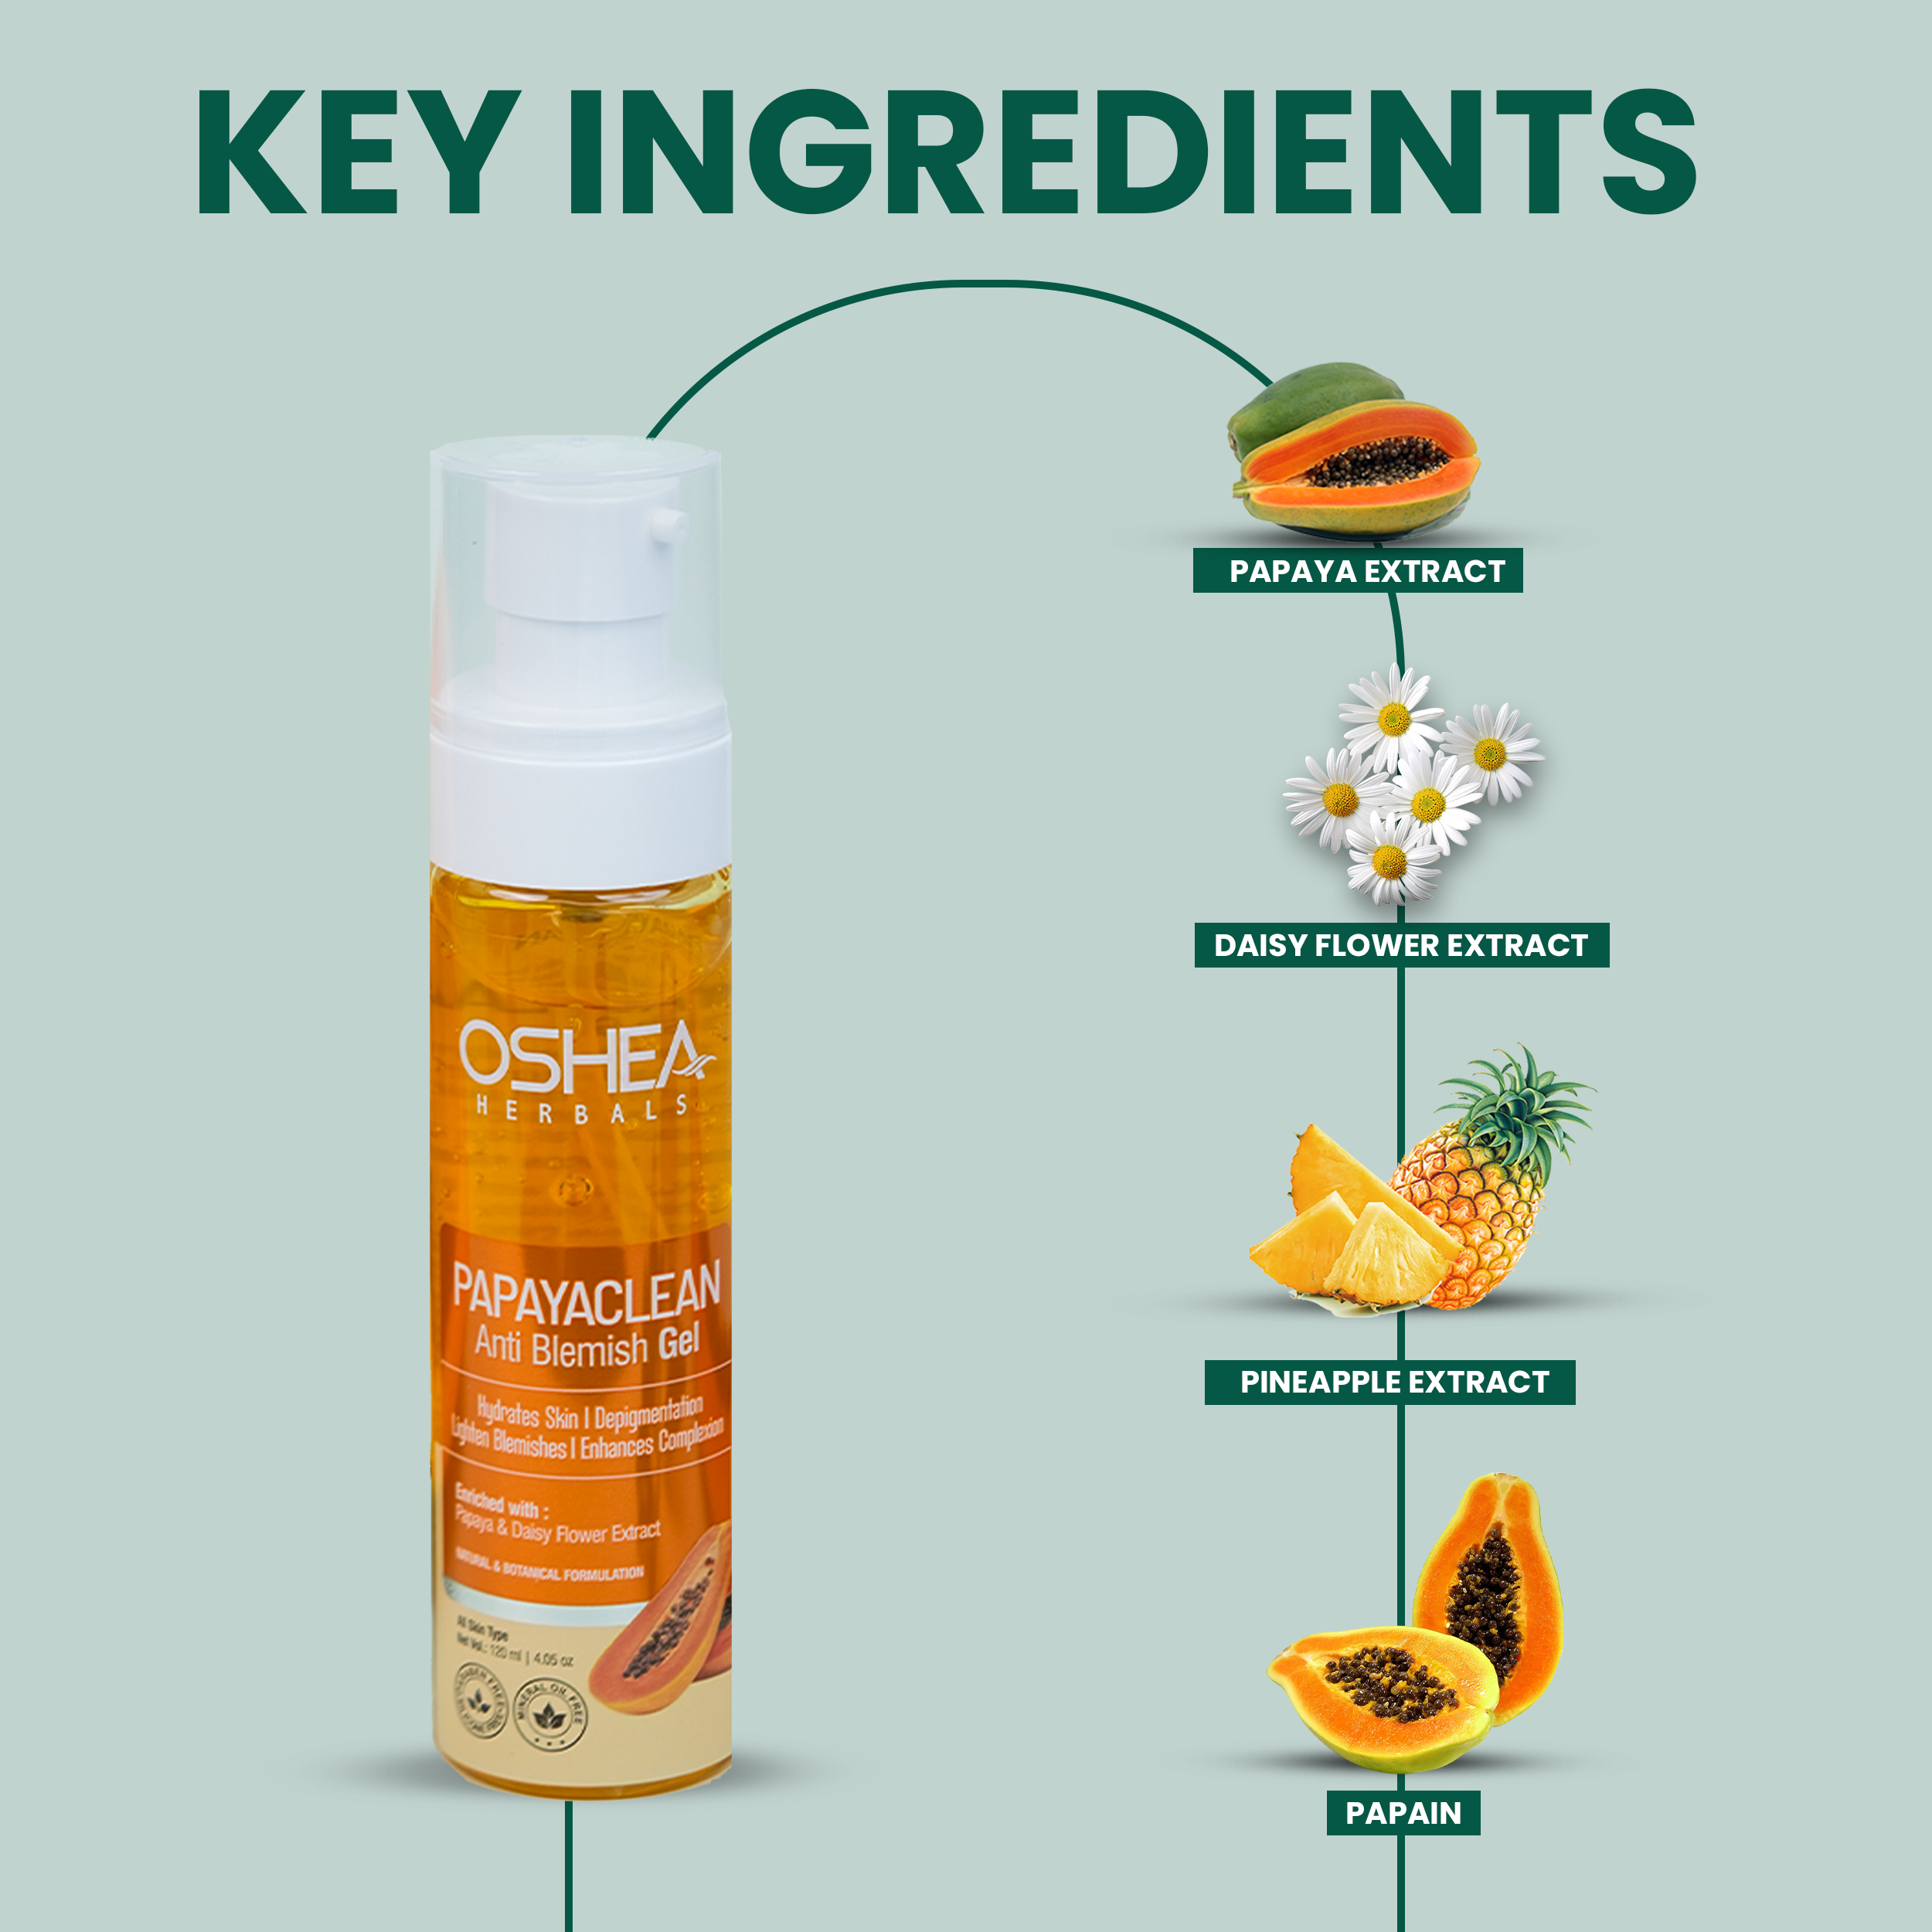 key ingredients Papayaclean Anti Blemish Gel Oshea Herbals